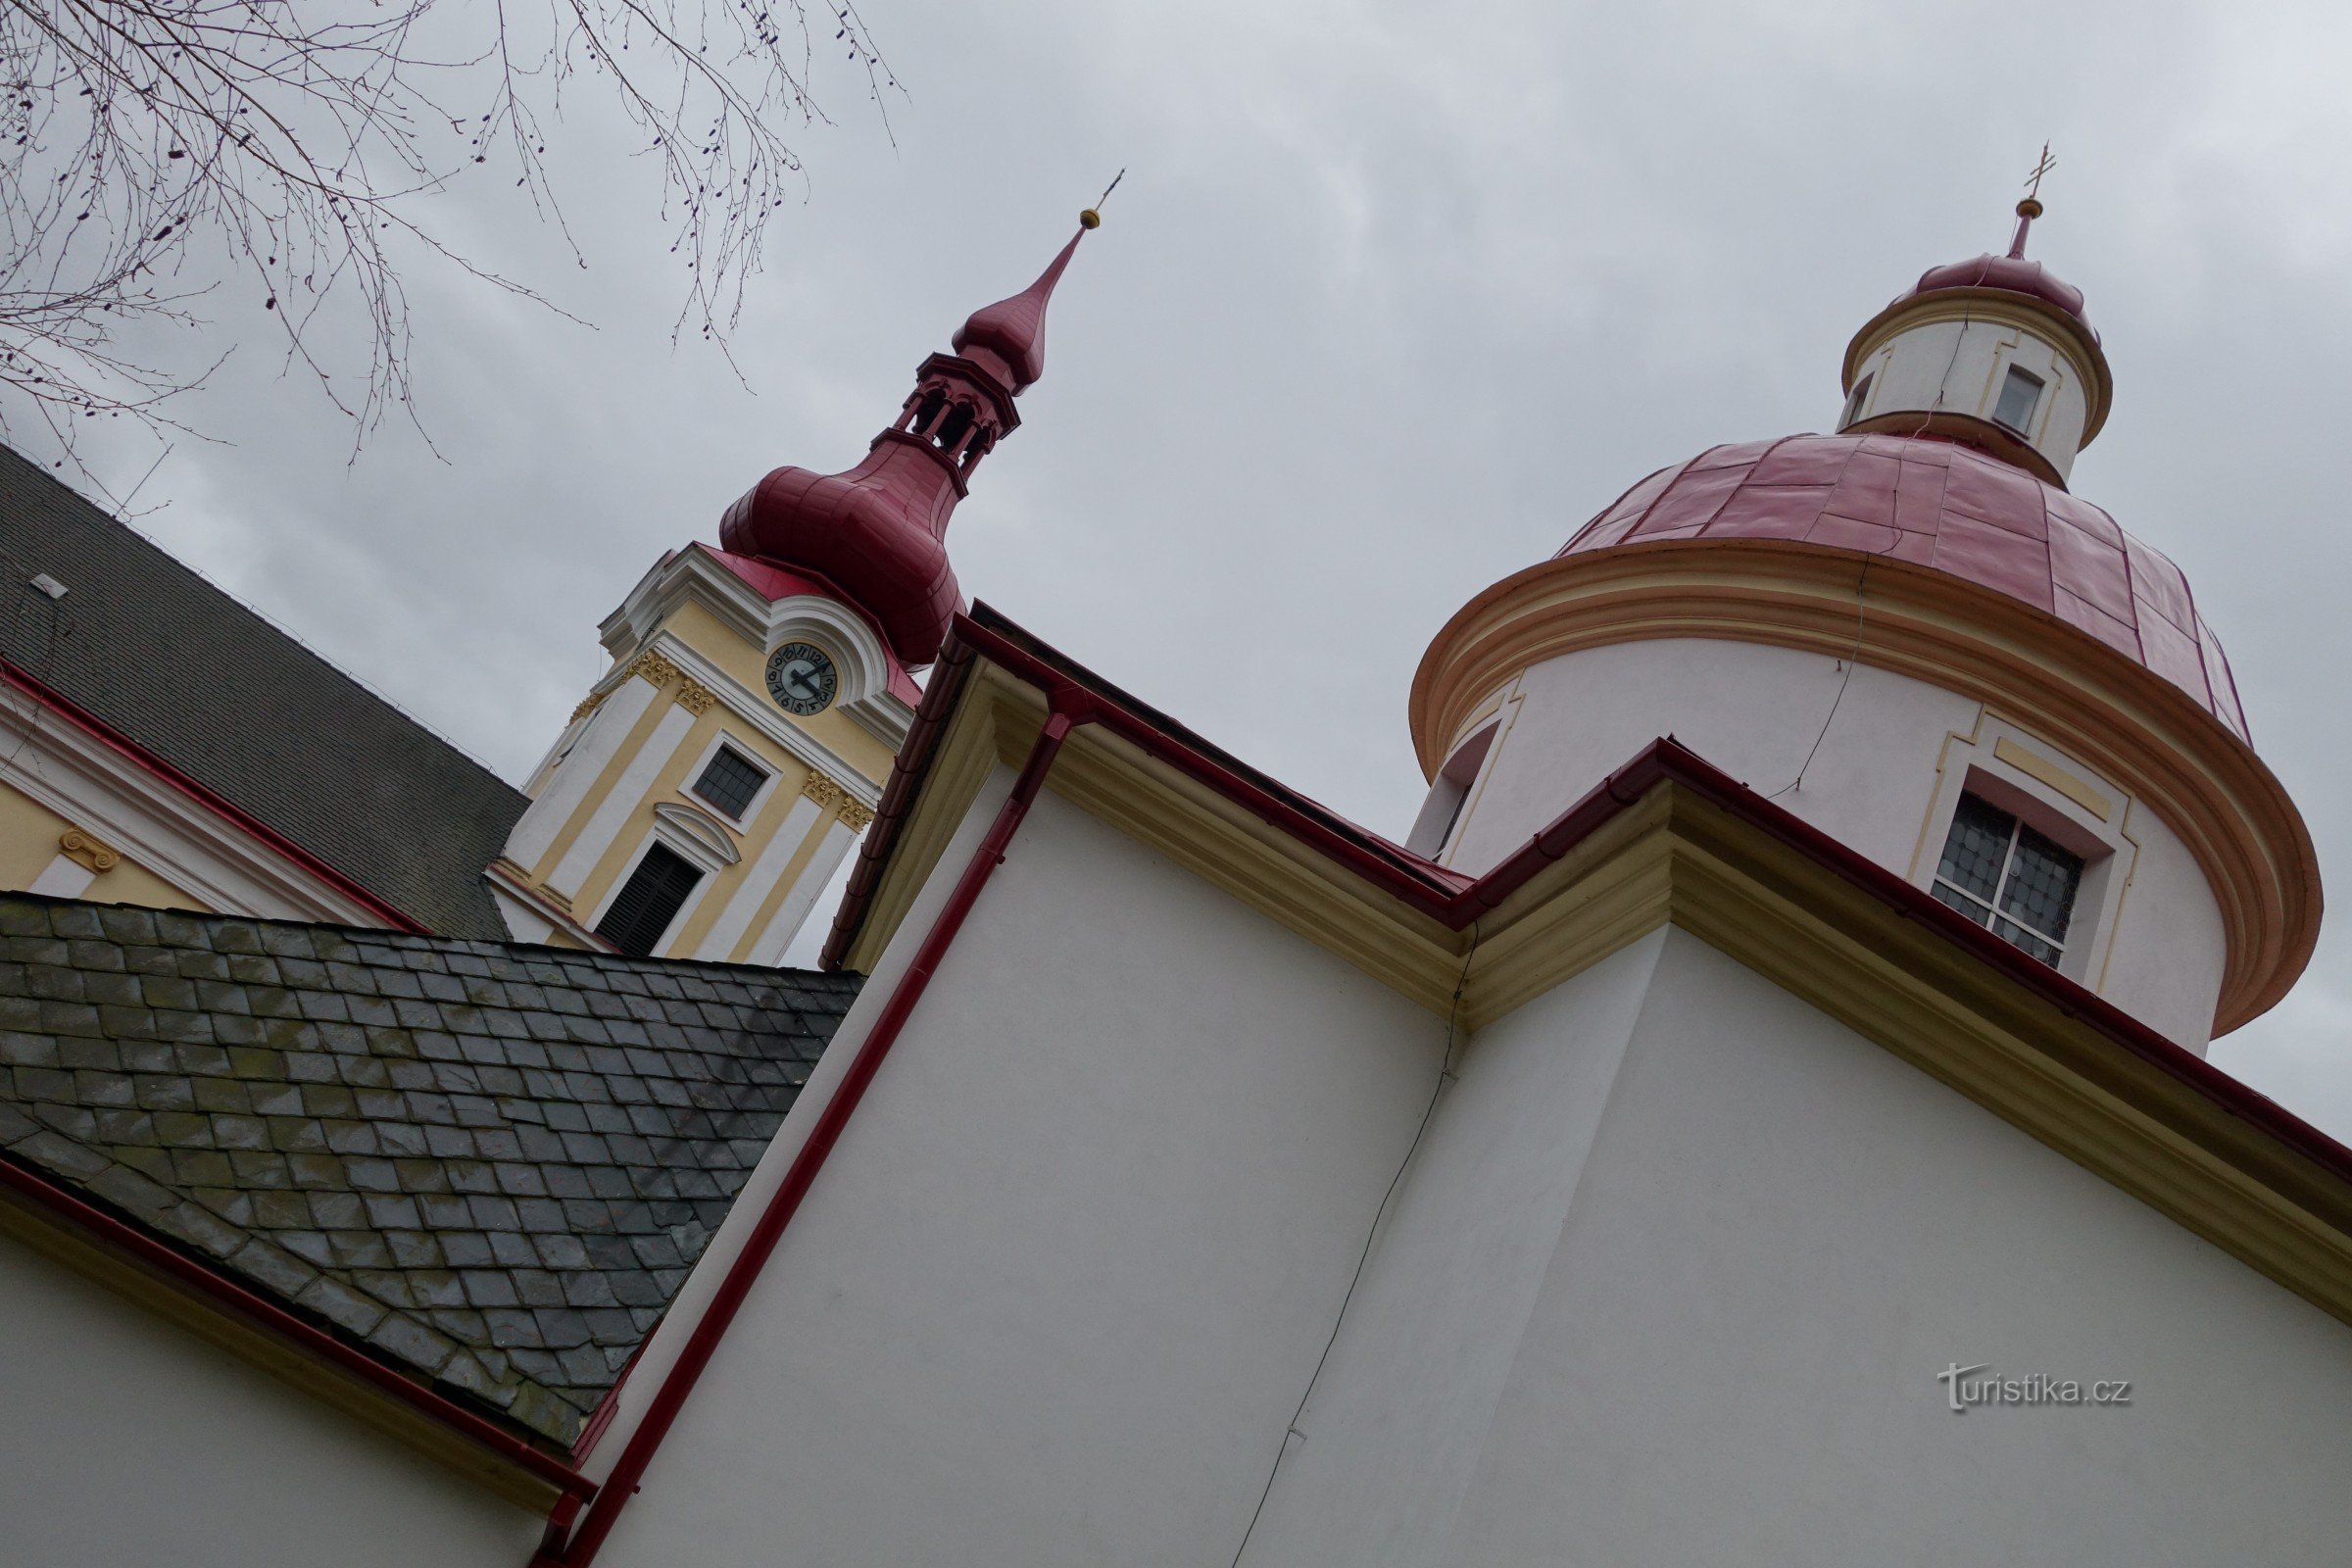 Pustiměř - rotunda của St. Pantaleona, tu viện Benedictine, nhà nguyện St. Anne và nhà thờ thánh Benedict